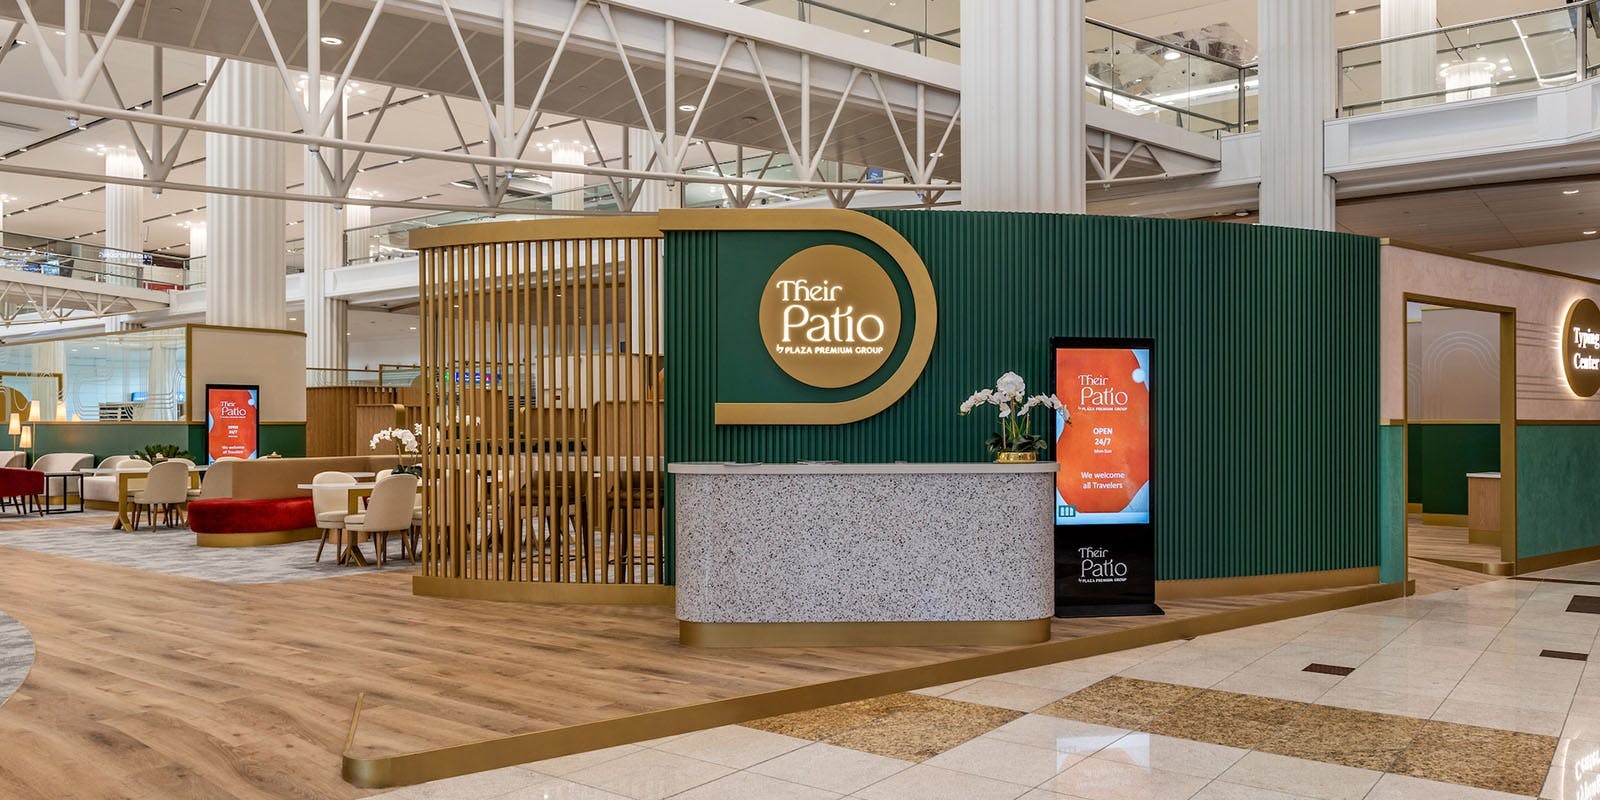 Aéroport international de Dubaï (Arrivées) Billets Their Patio by Plaza Premium Group